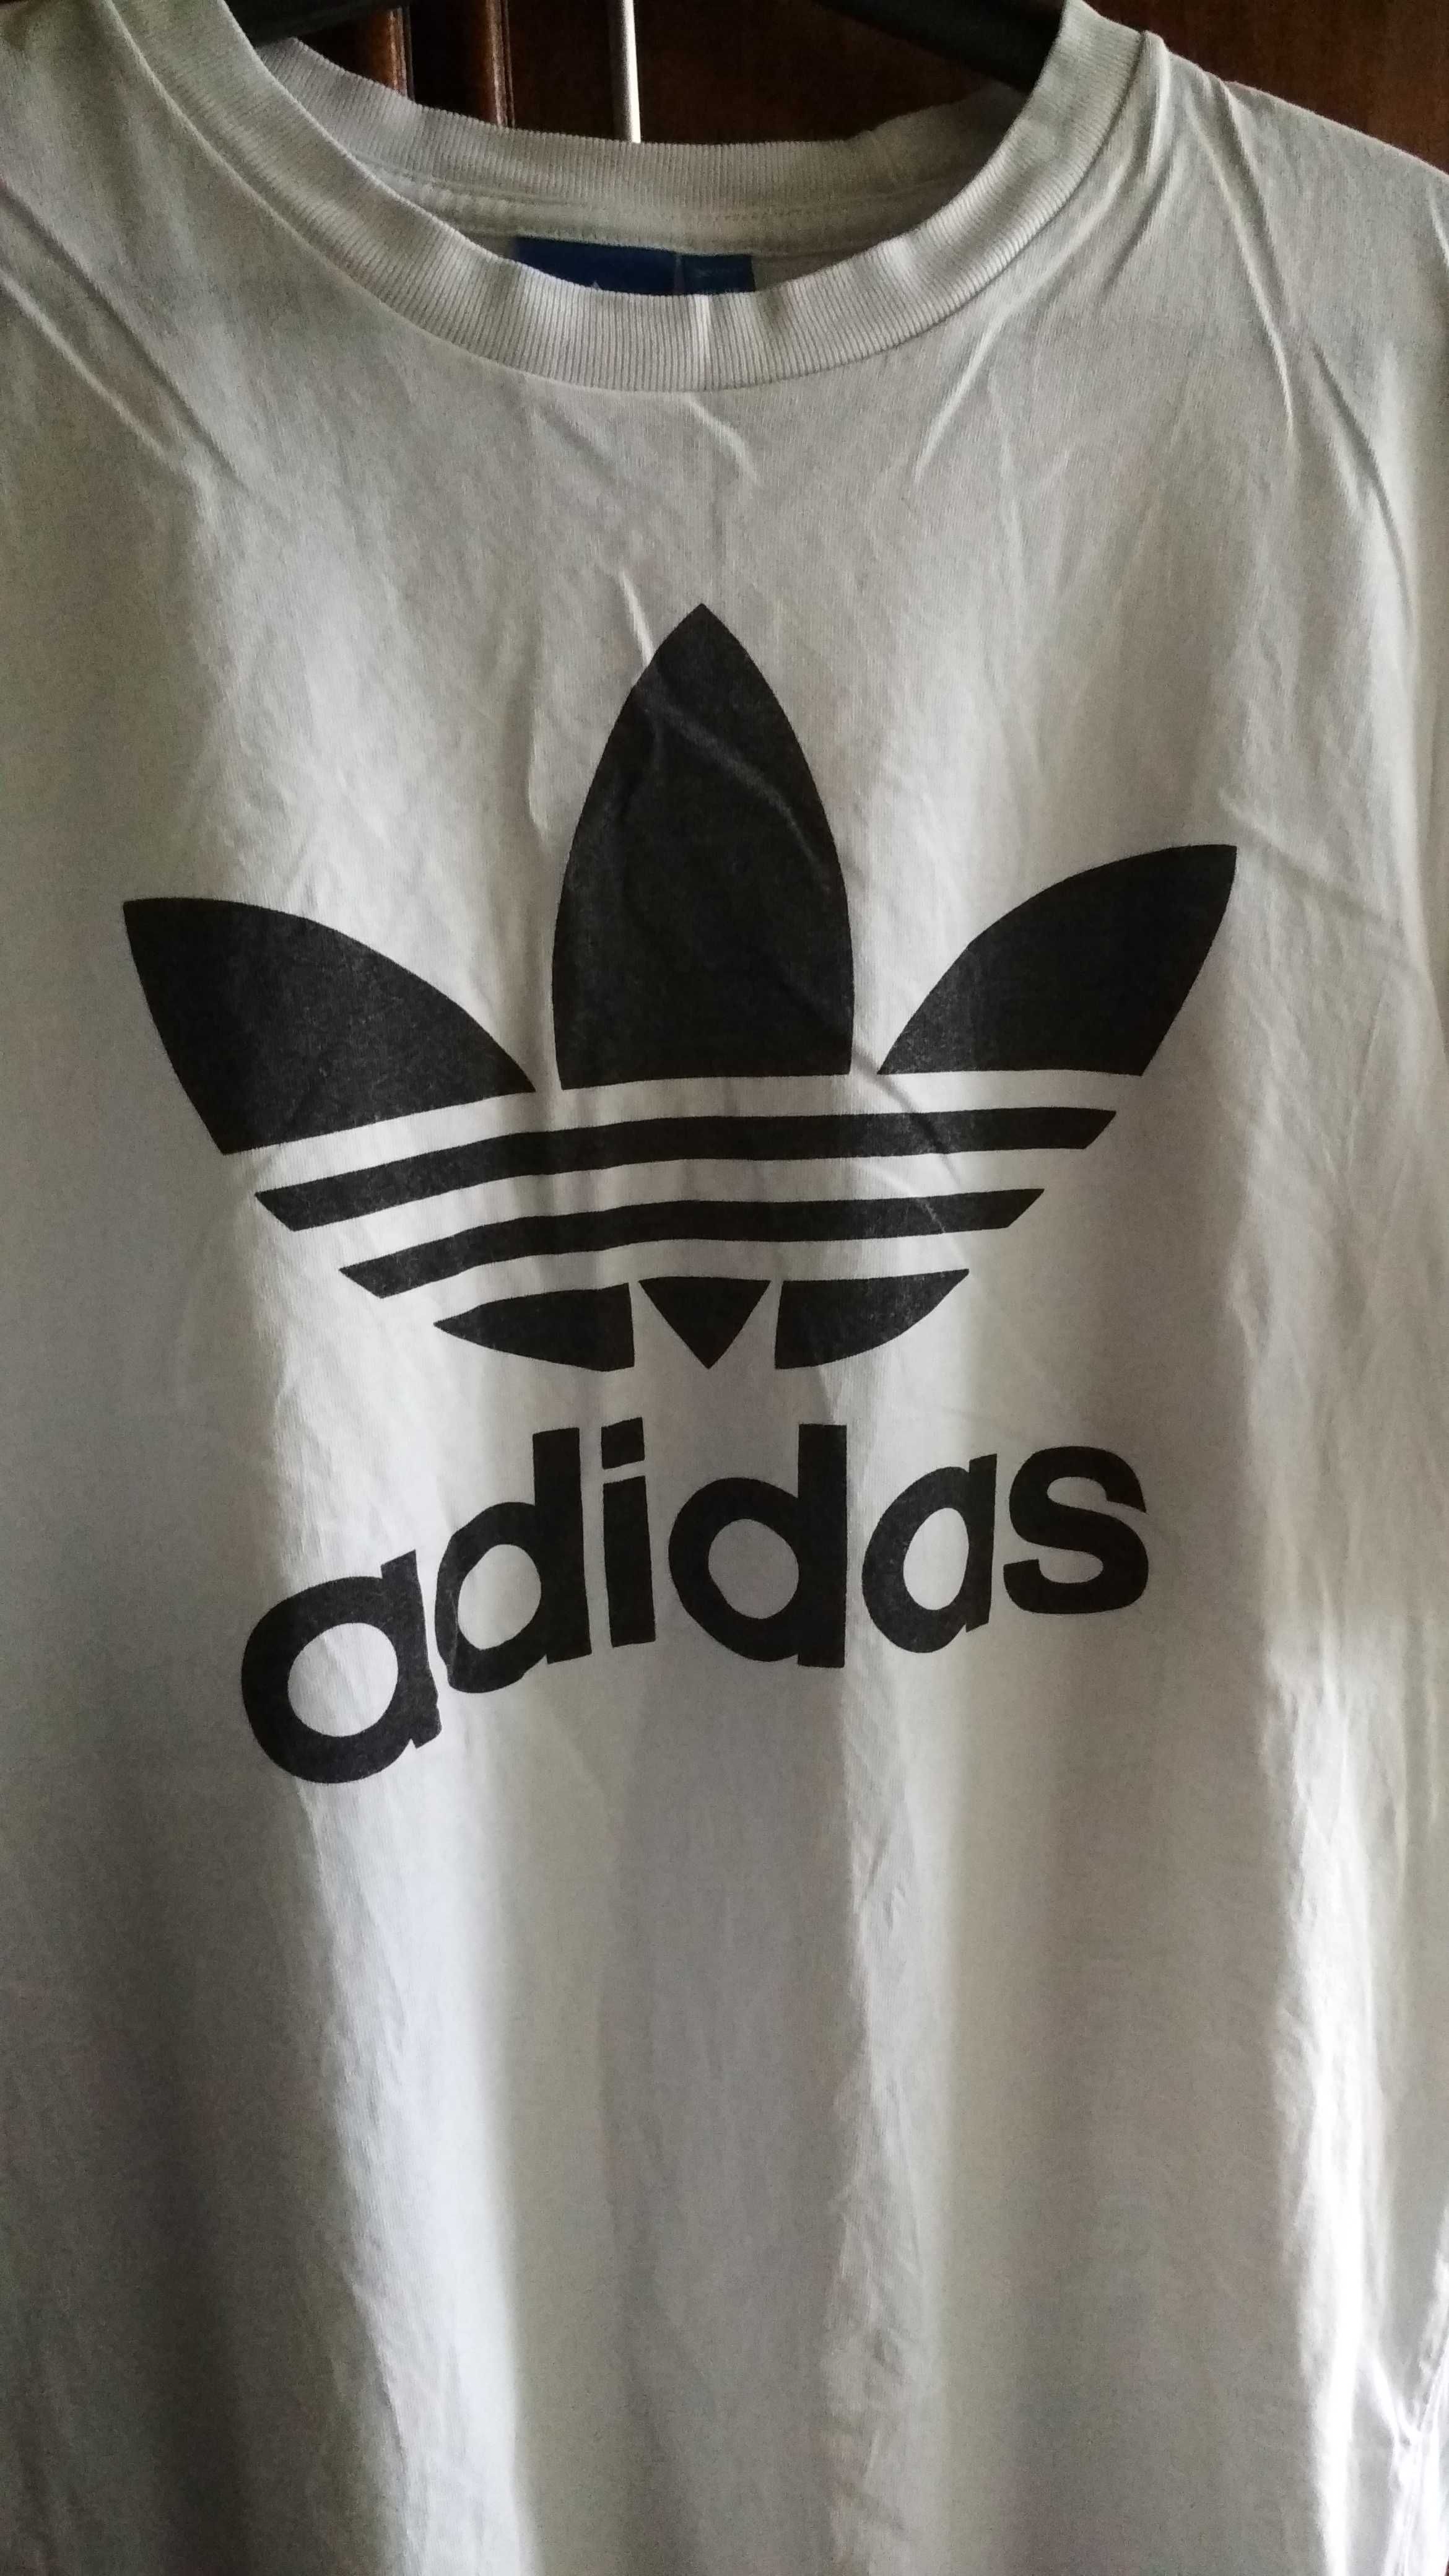 Adidas Classic футболка белая оригинал (L)